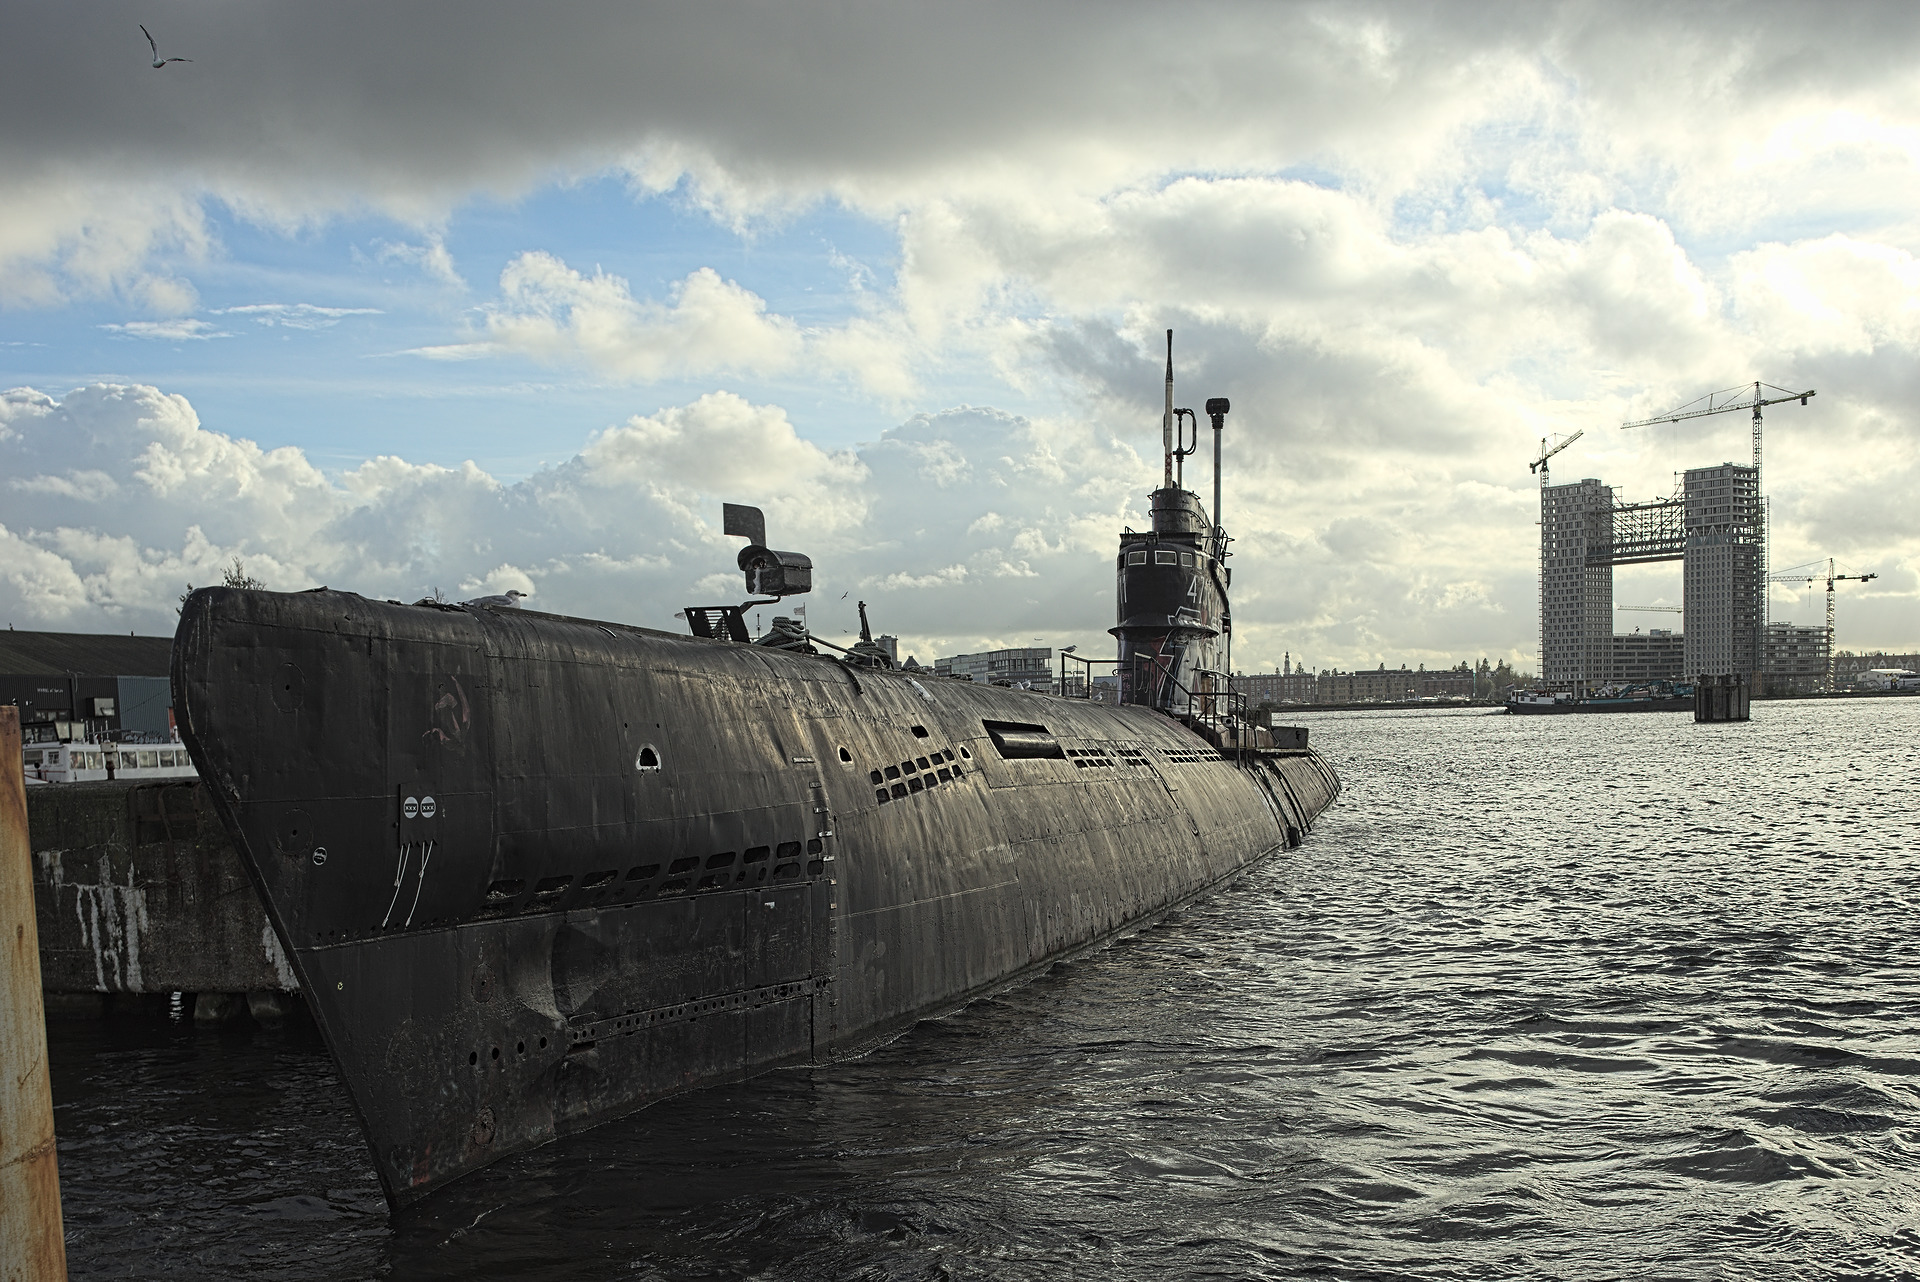 Amsterdam submarine